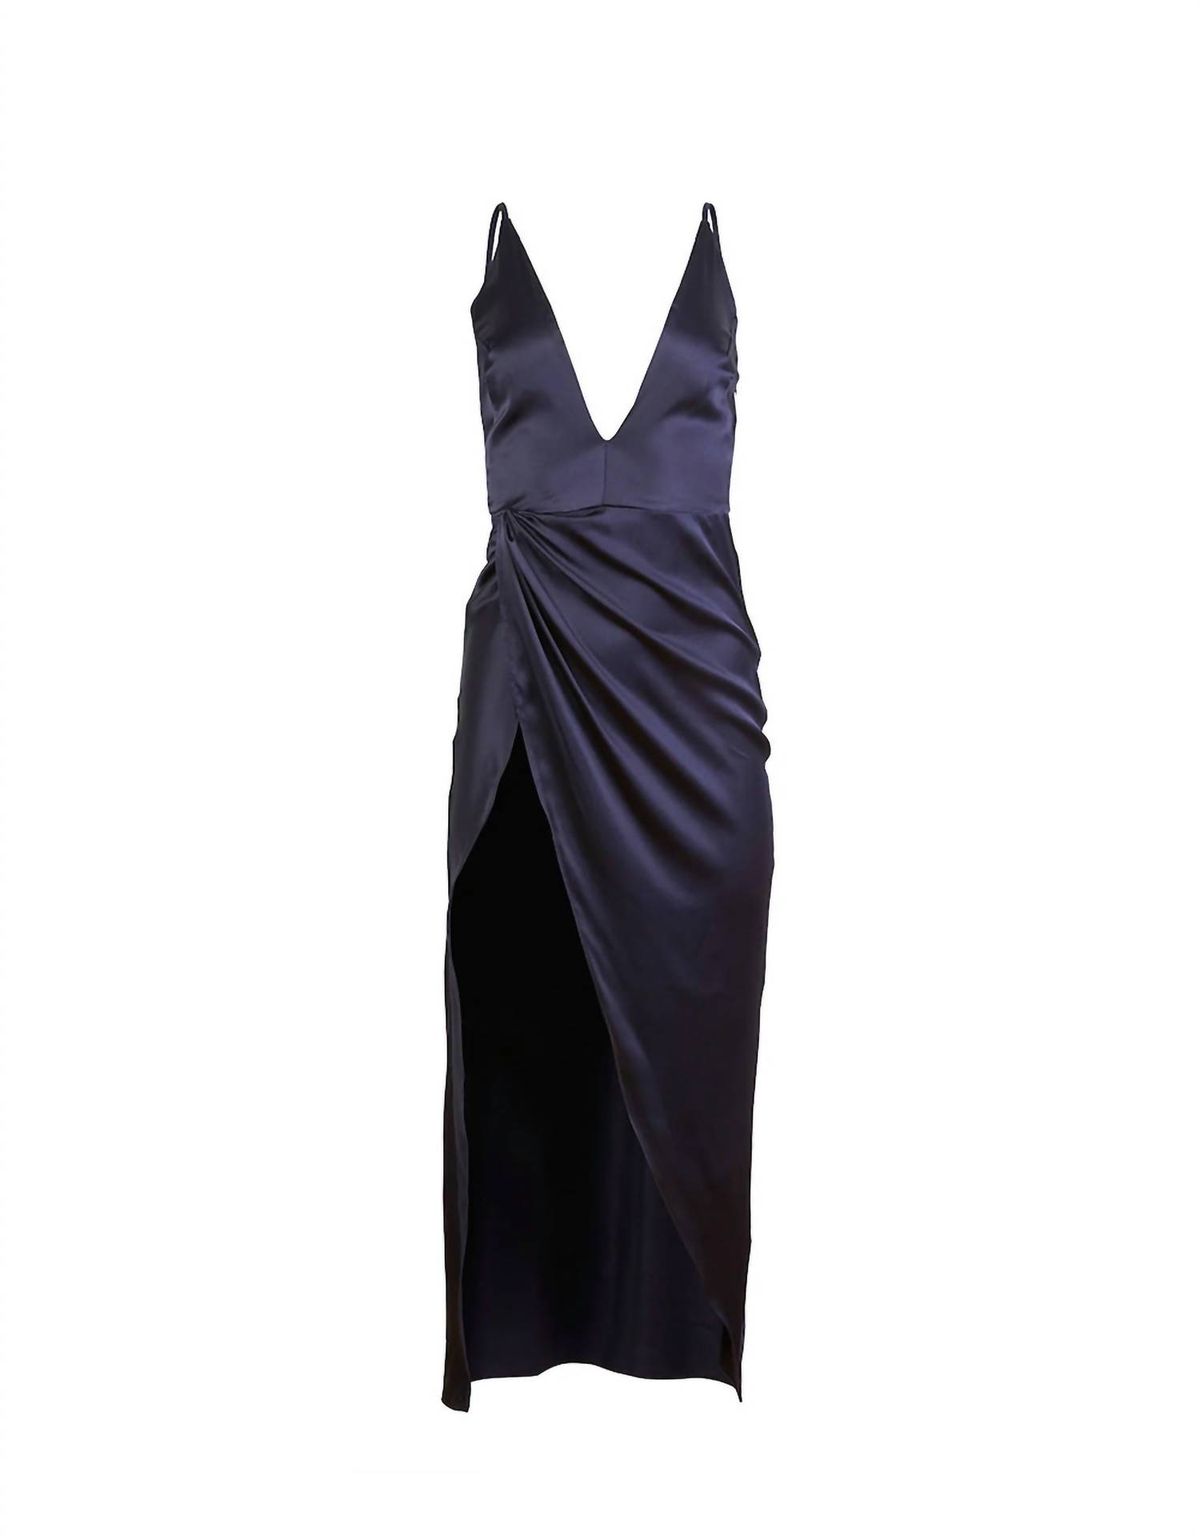 Style 1-201478577-2901 Fleur Du Mal Size M Plunge Satin Blue Side Slit Dress on Queenly